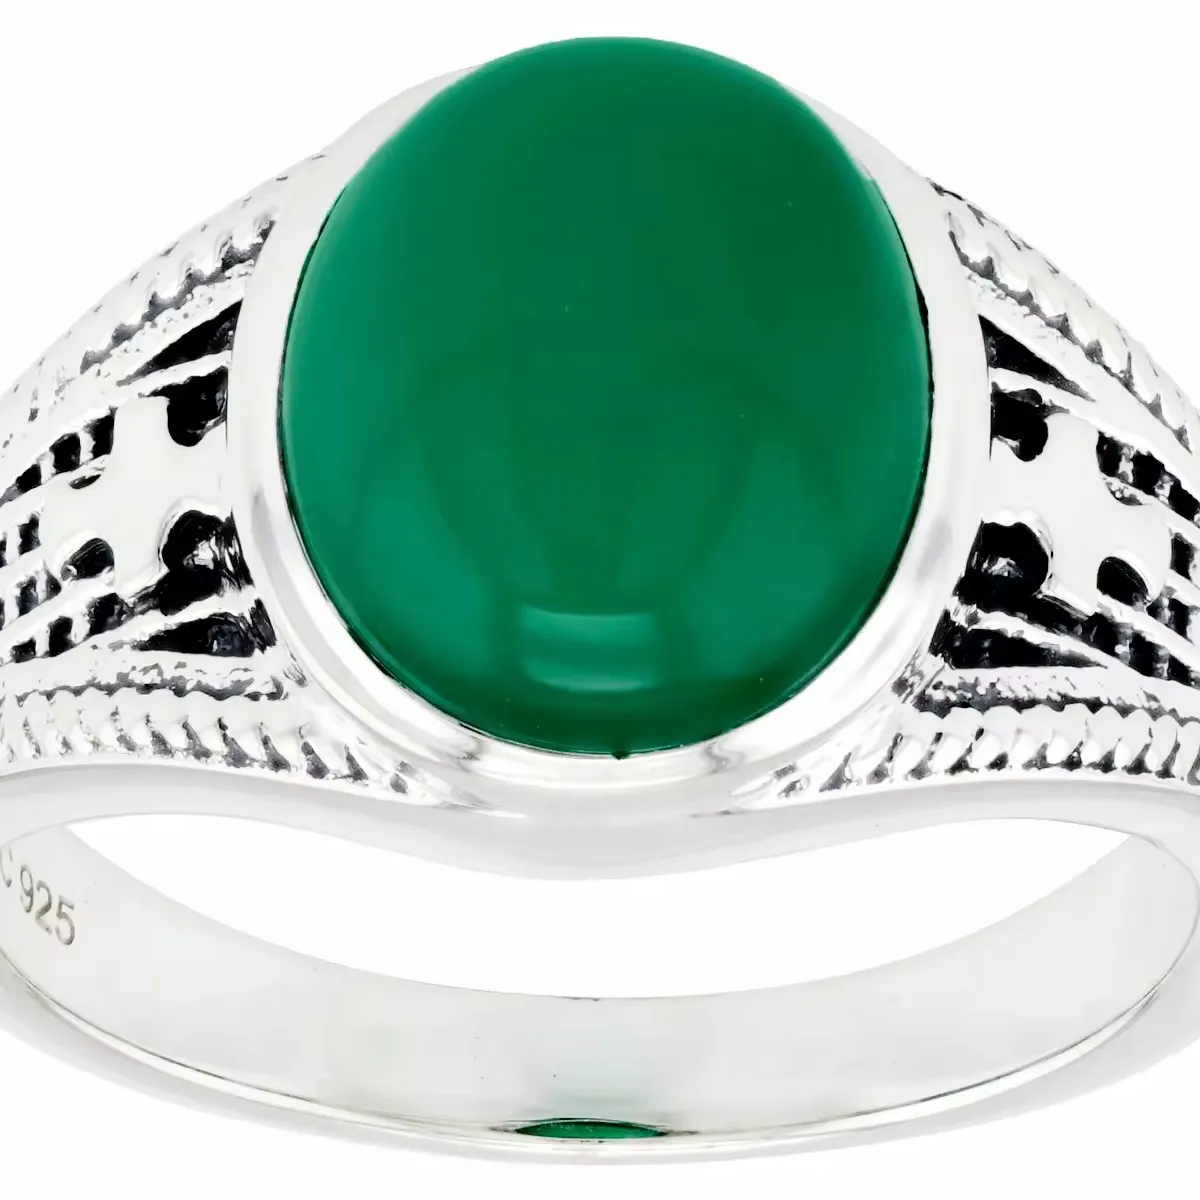 Cincin Pria Perak Sterling dengan Onyx hijau, perhiasan batu permata grosir, desain modis & elegan, Kecantikan abadi untuk sehari-hari